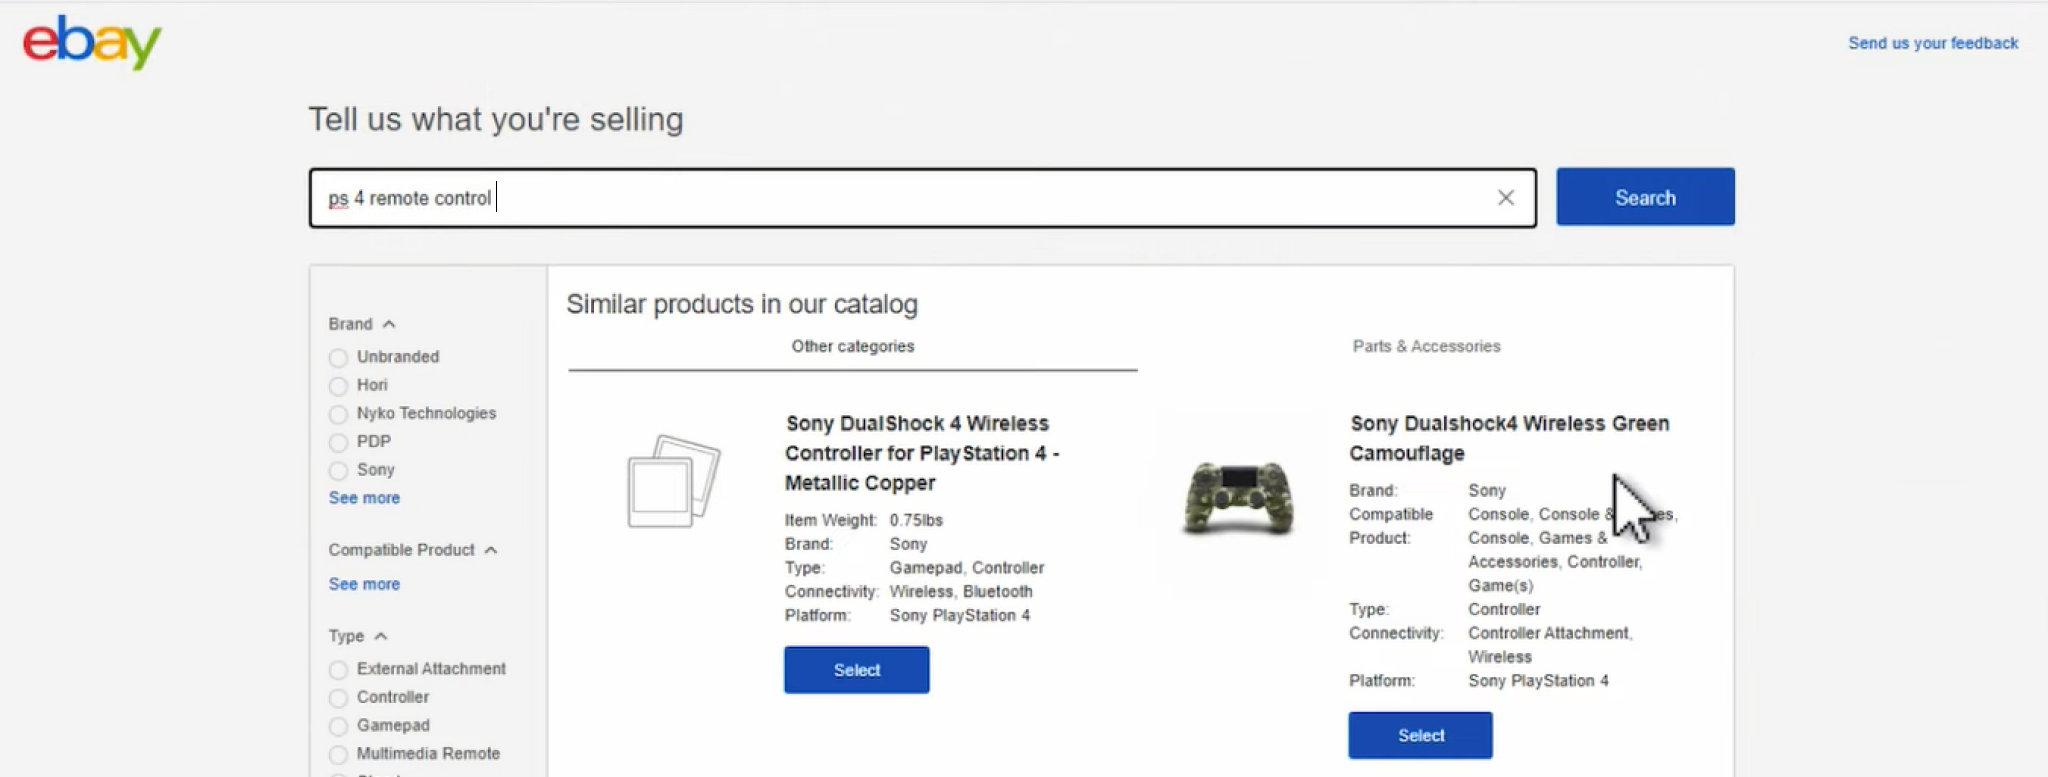 Ein Walmart Dropshipping Produkt auf eBay inserieren